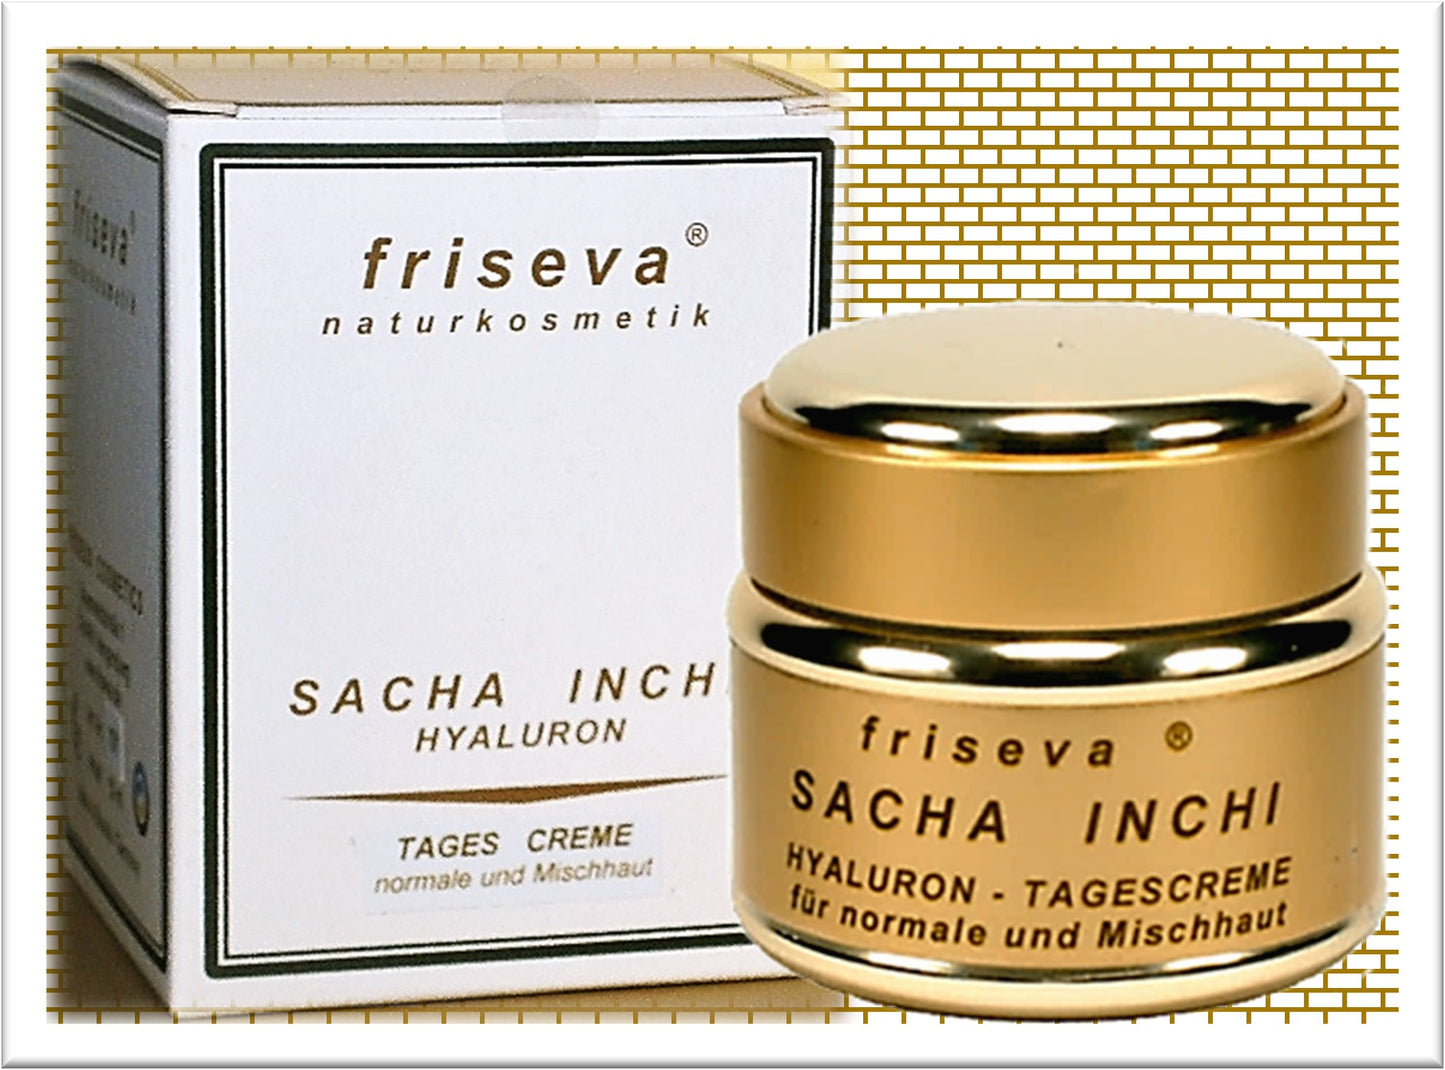 Friseva Sacha Inchi Tagescreme für normale und Mischhaut 50 ml